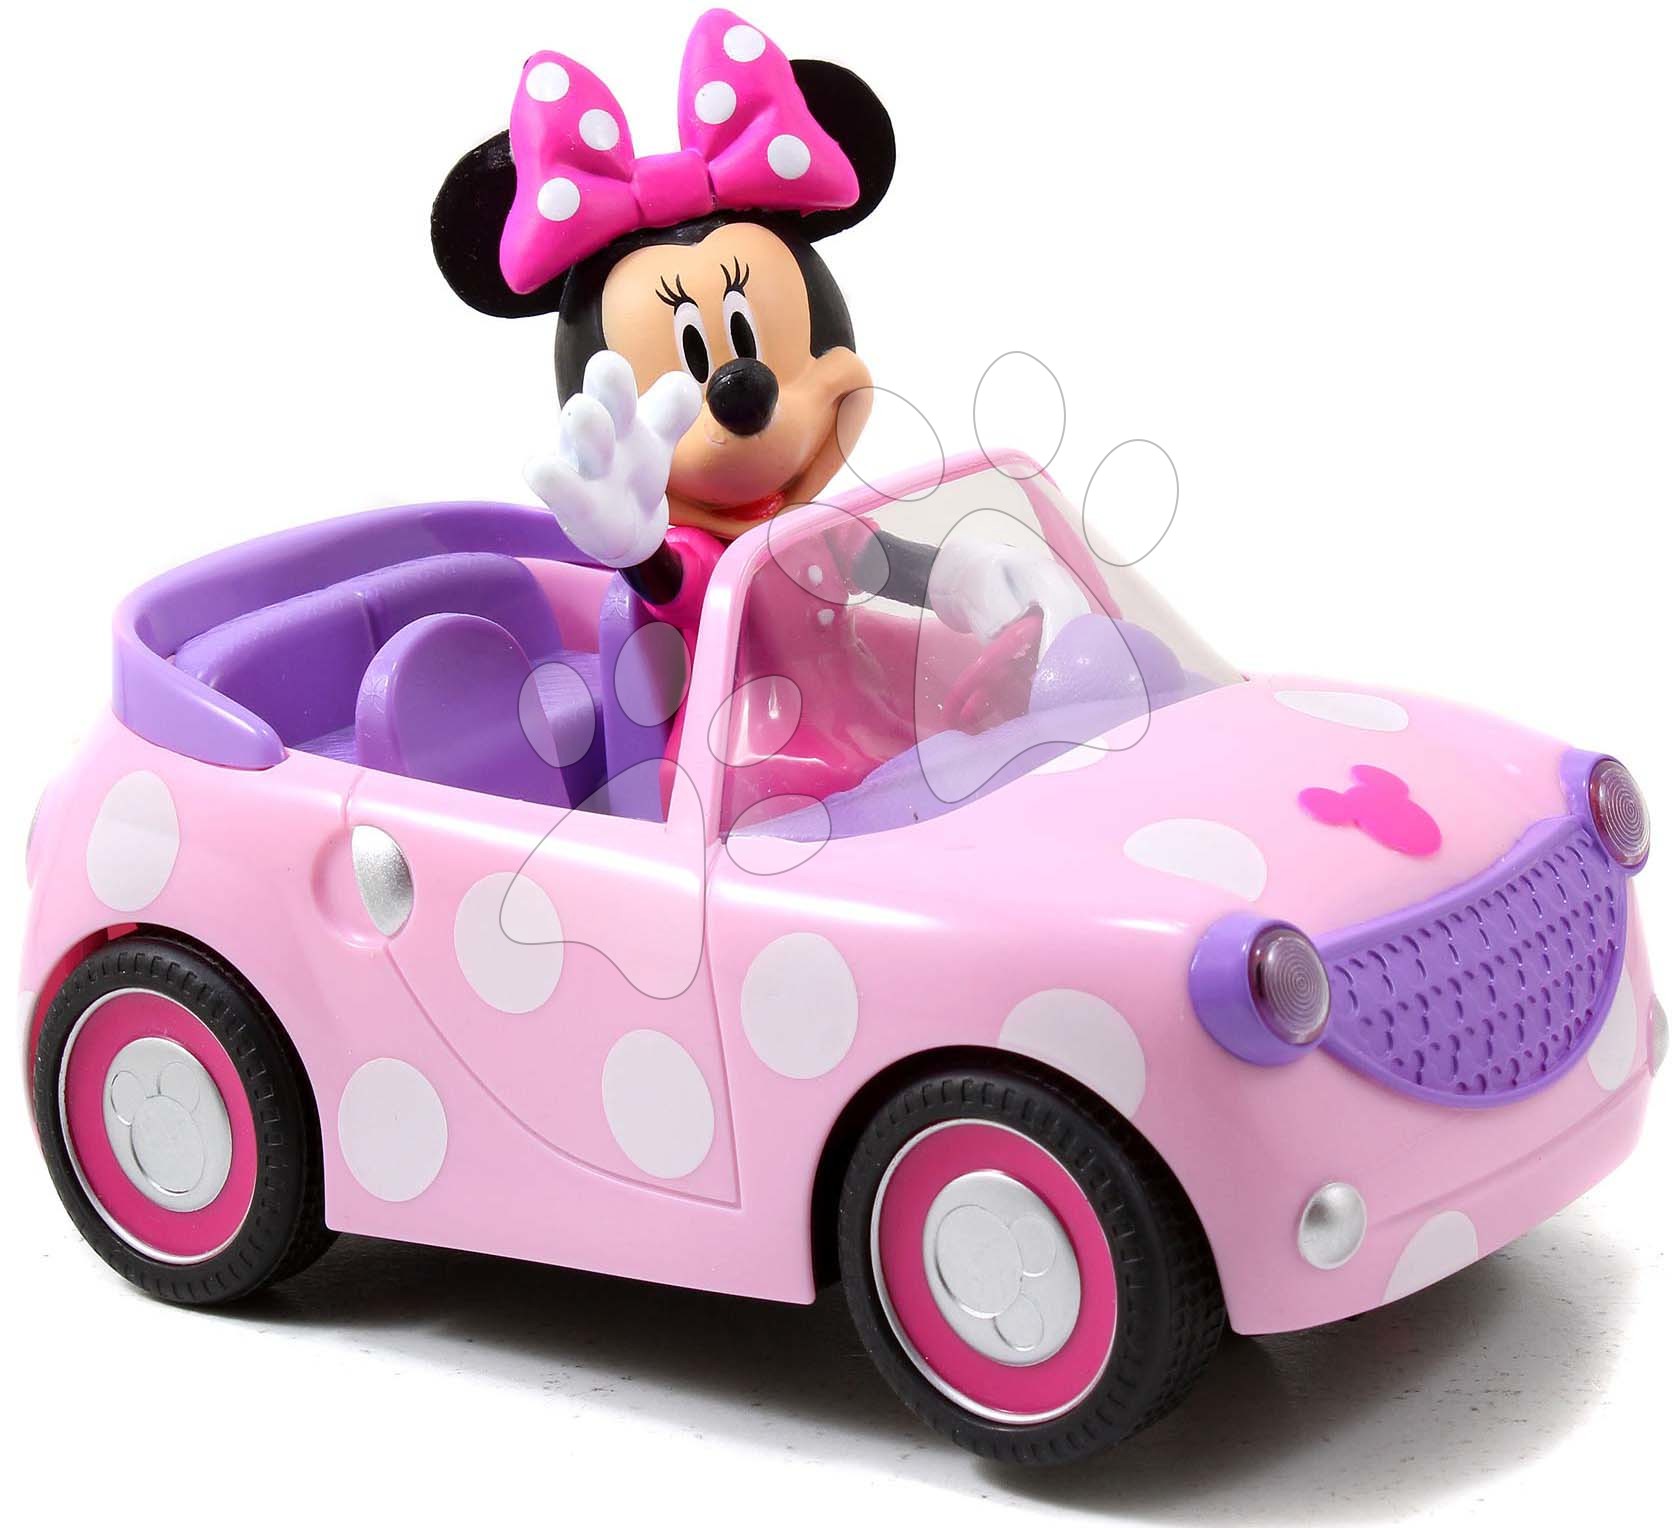 Távirányítós autó RC Minnie Roadster Jada rózsaszín 19 cm hosszú Baba játék webáruház - játék rendelés online